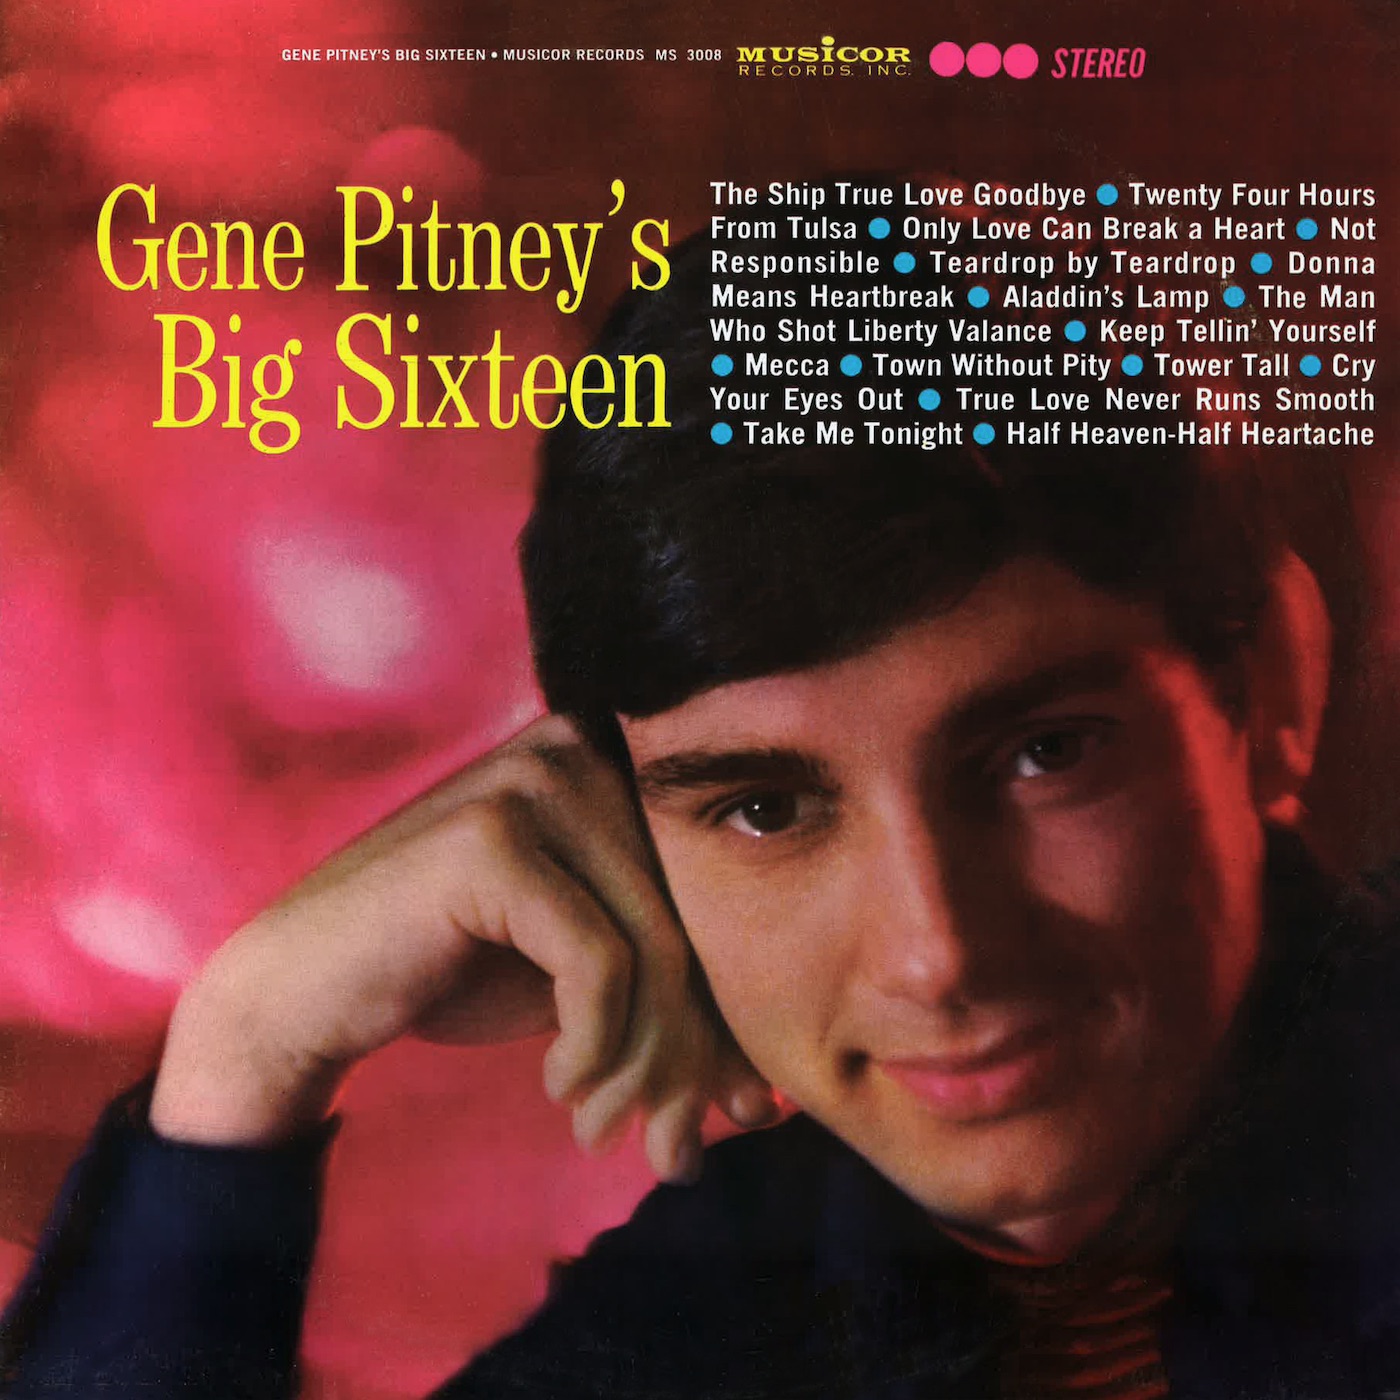 Gene Pitney's Big Sixteen by Gene Pitney